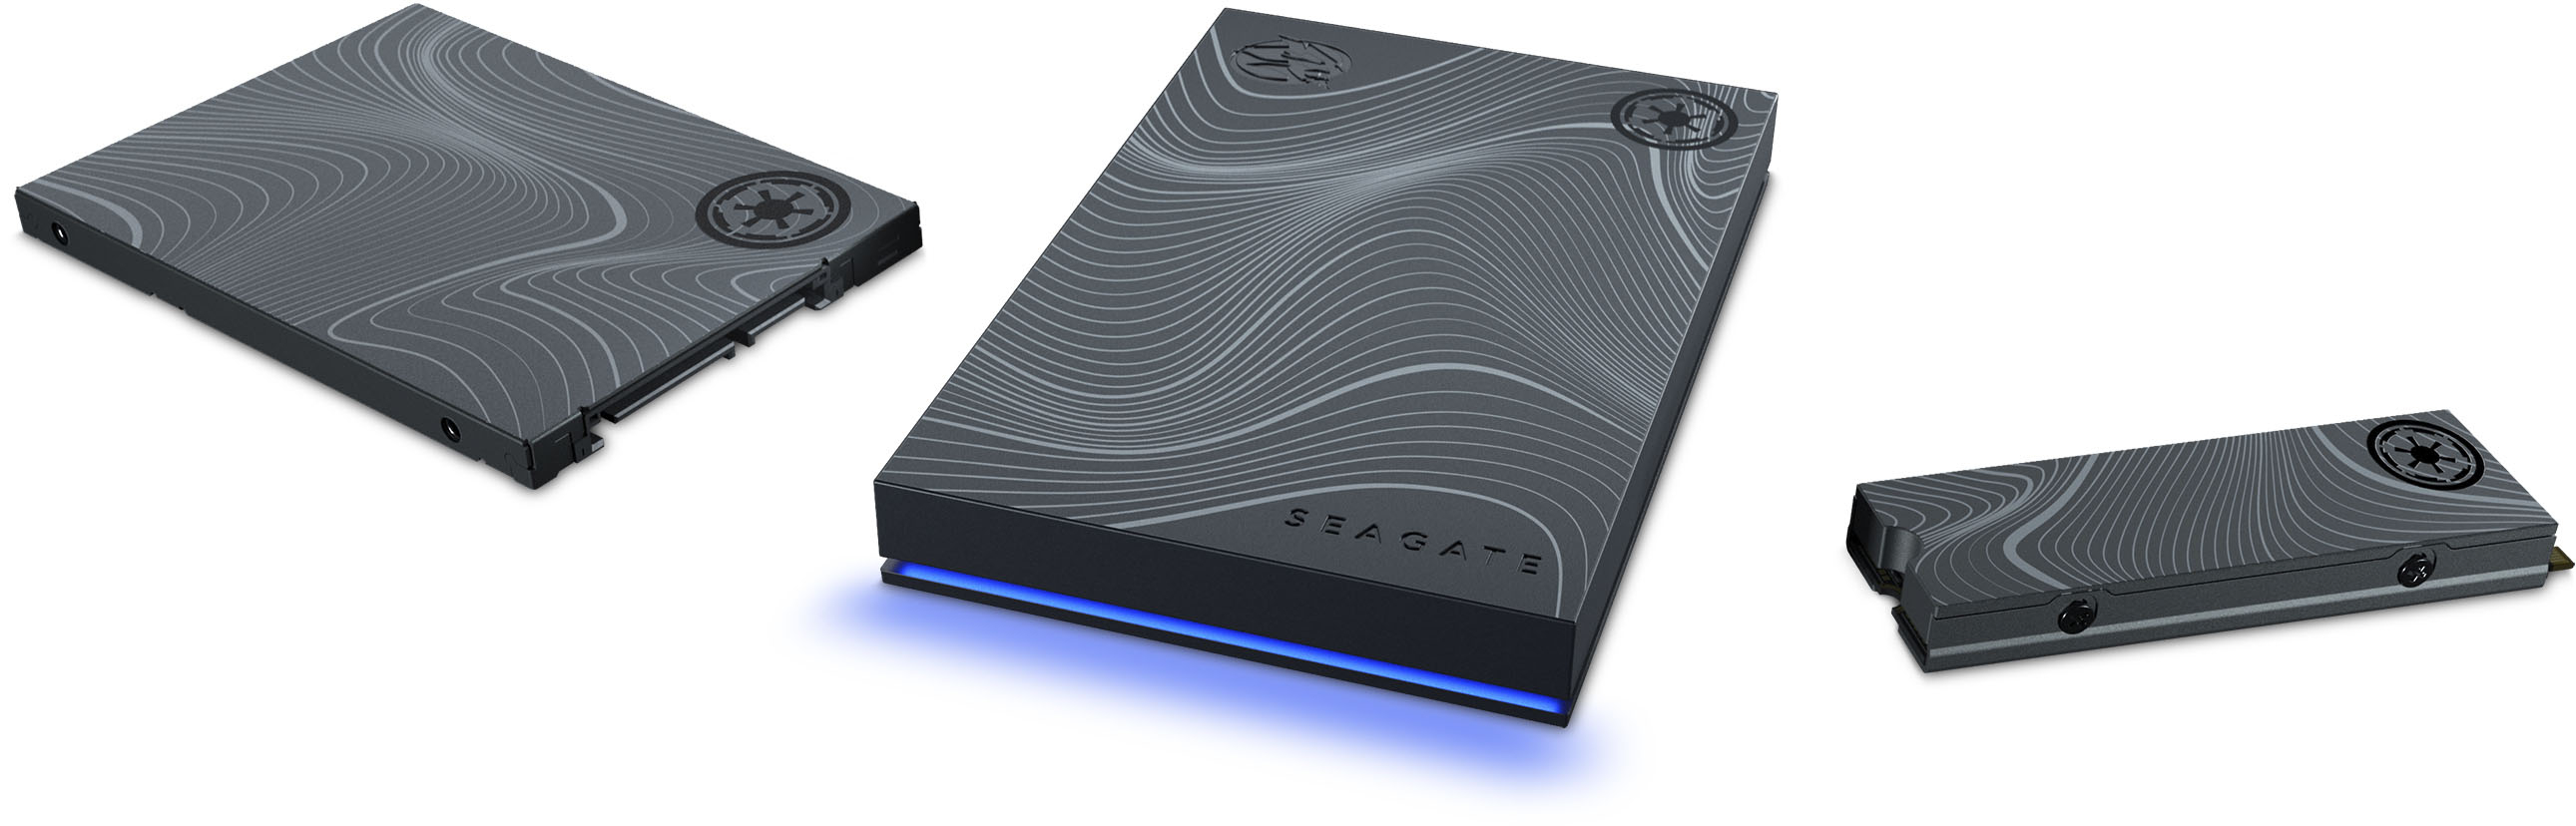 Seagate FireCuda 530 SSD 1TB R:7300/W:6000 Mandalorian Beskar Special  Edition